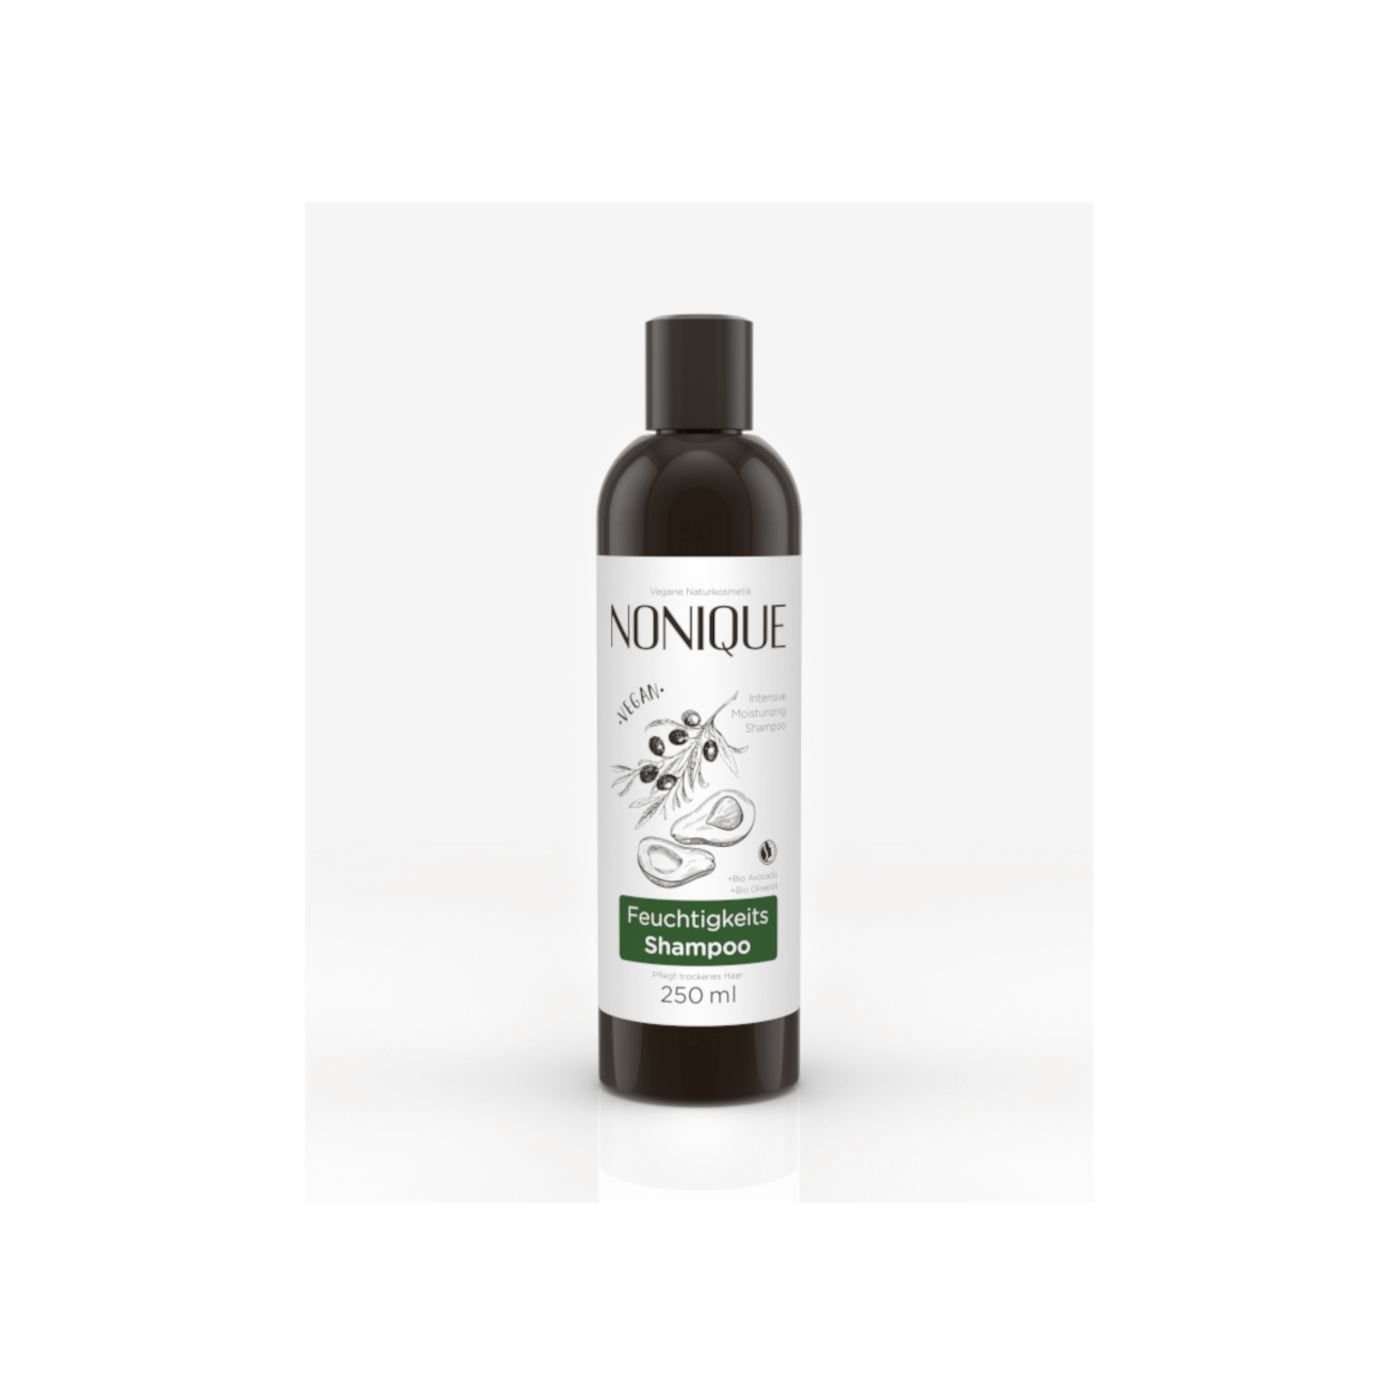 NONIQUE - Intensive Shampoo 250ml